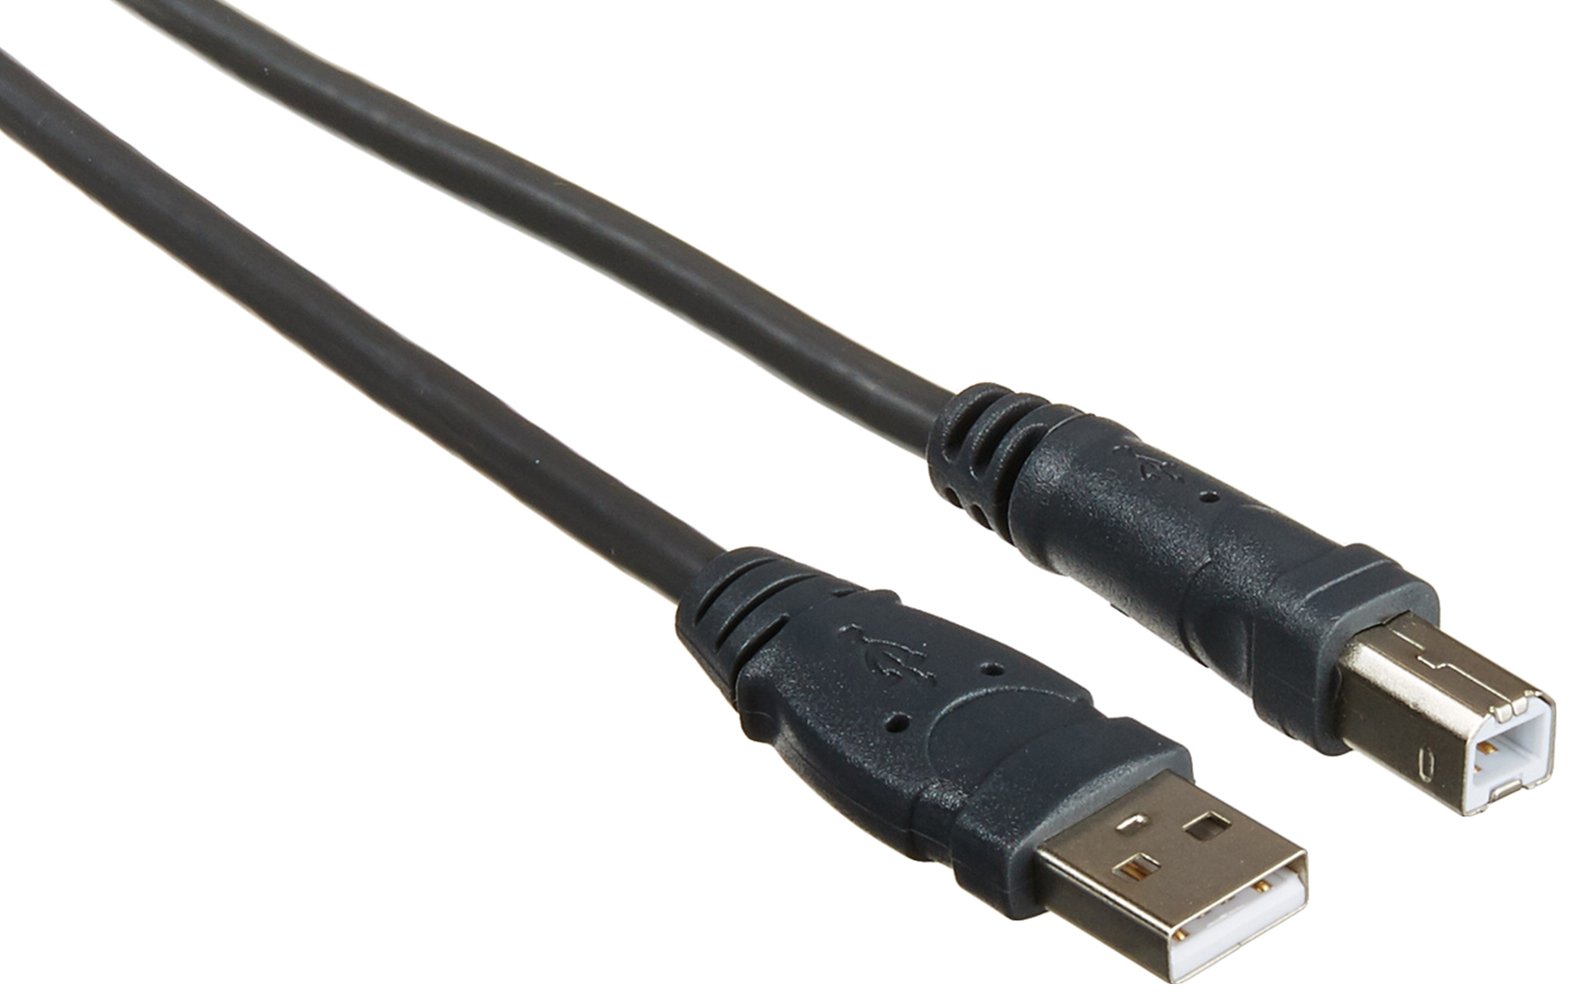 Belkin USB cable - 16' (F3U133B16)